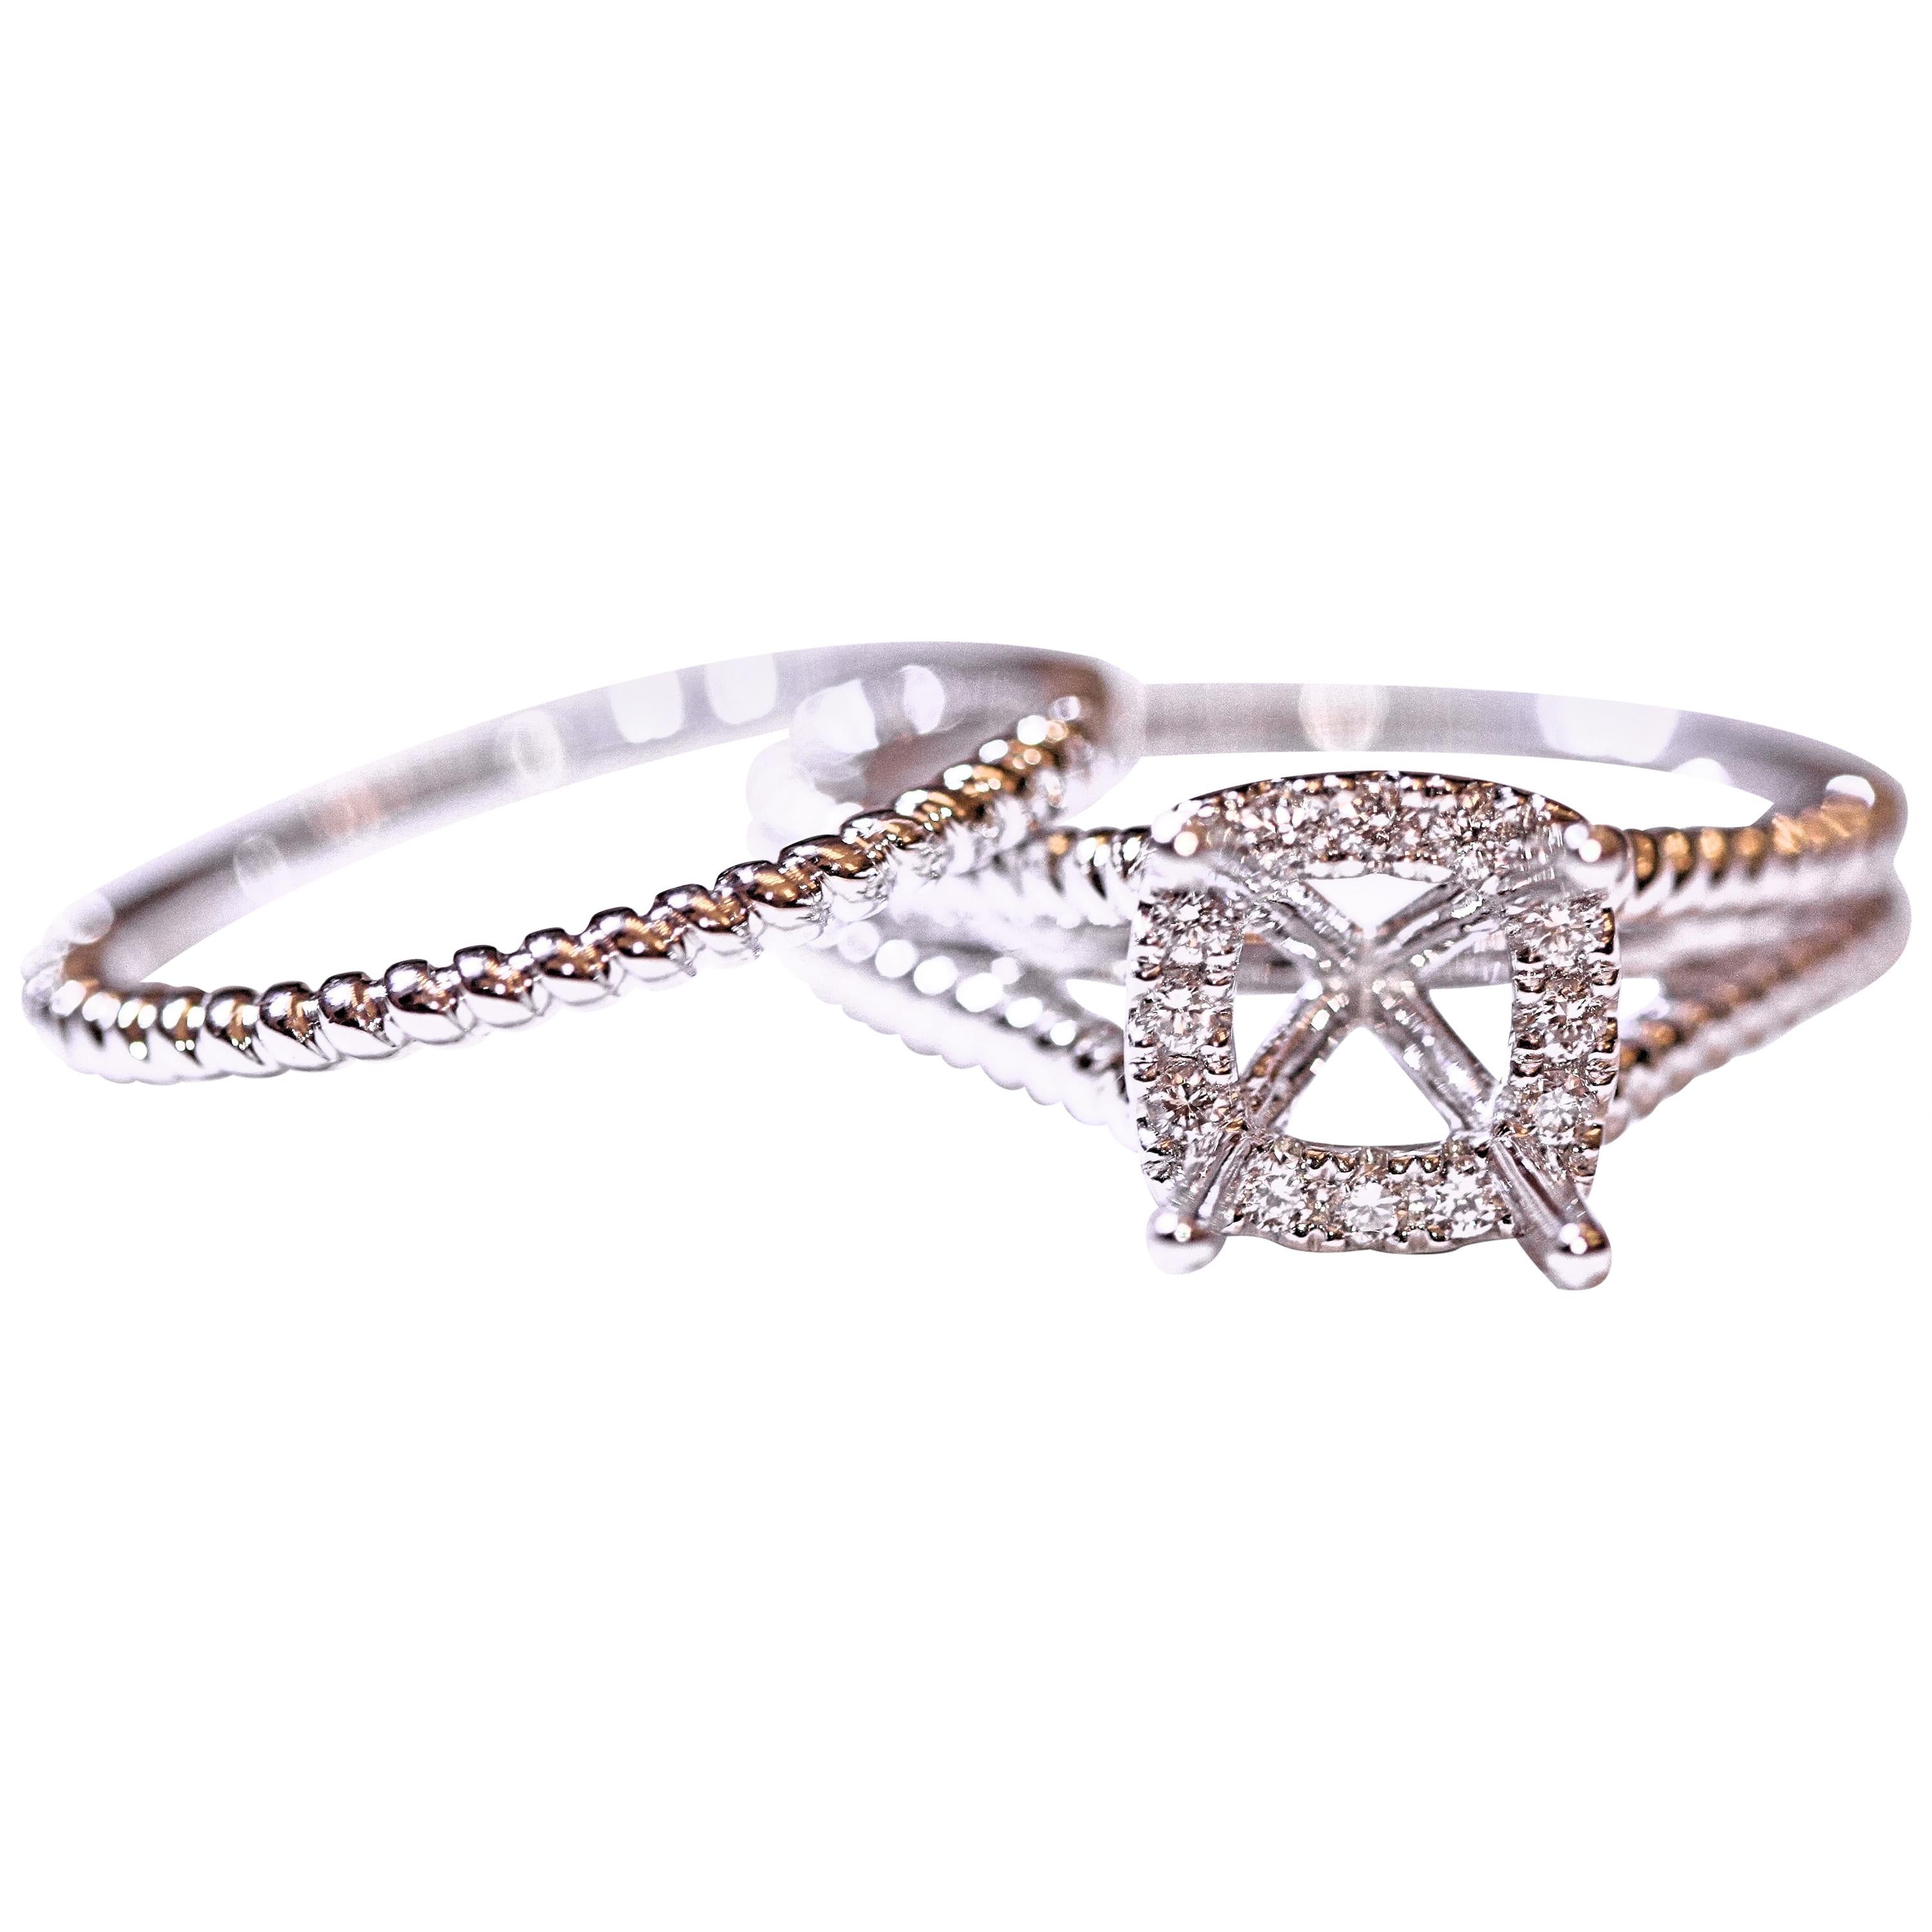 Diamond Engagement Ring Wedding Band 14 Karat White Gold .15 Carat Total Weight For Sale